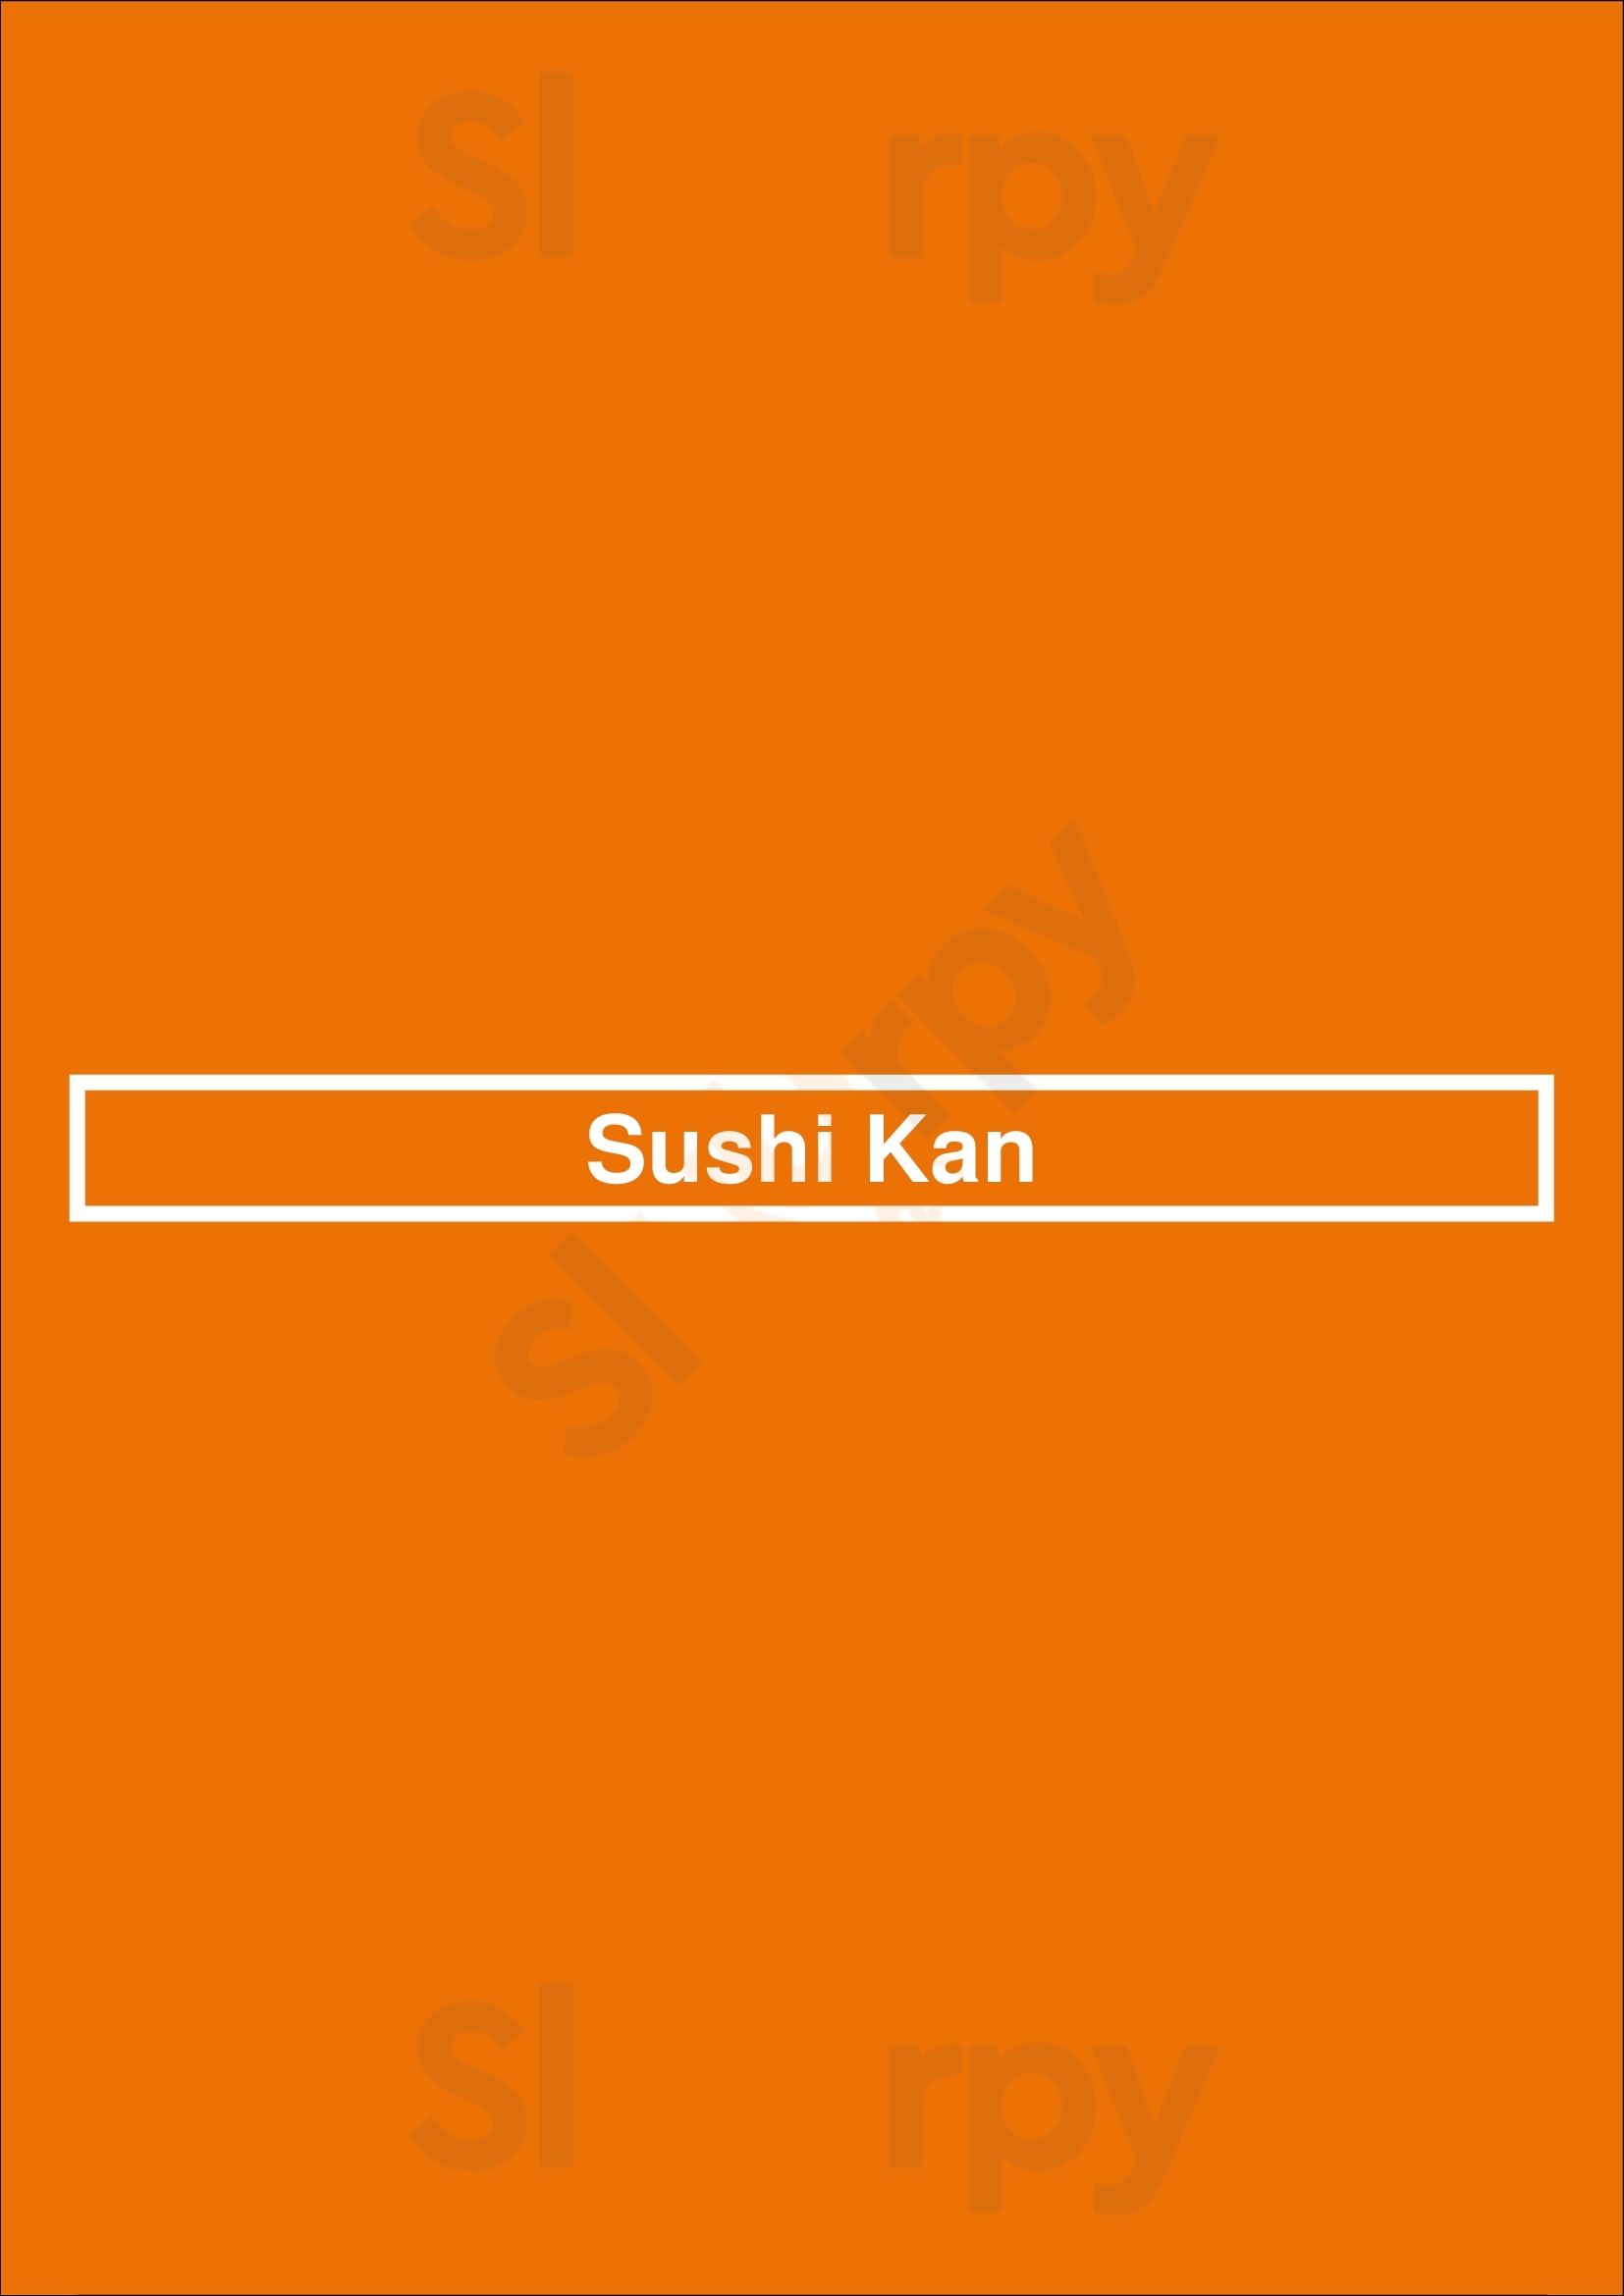 Sushi Kan Ottawa Menu - 1